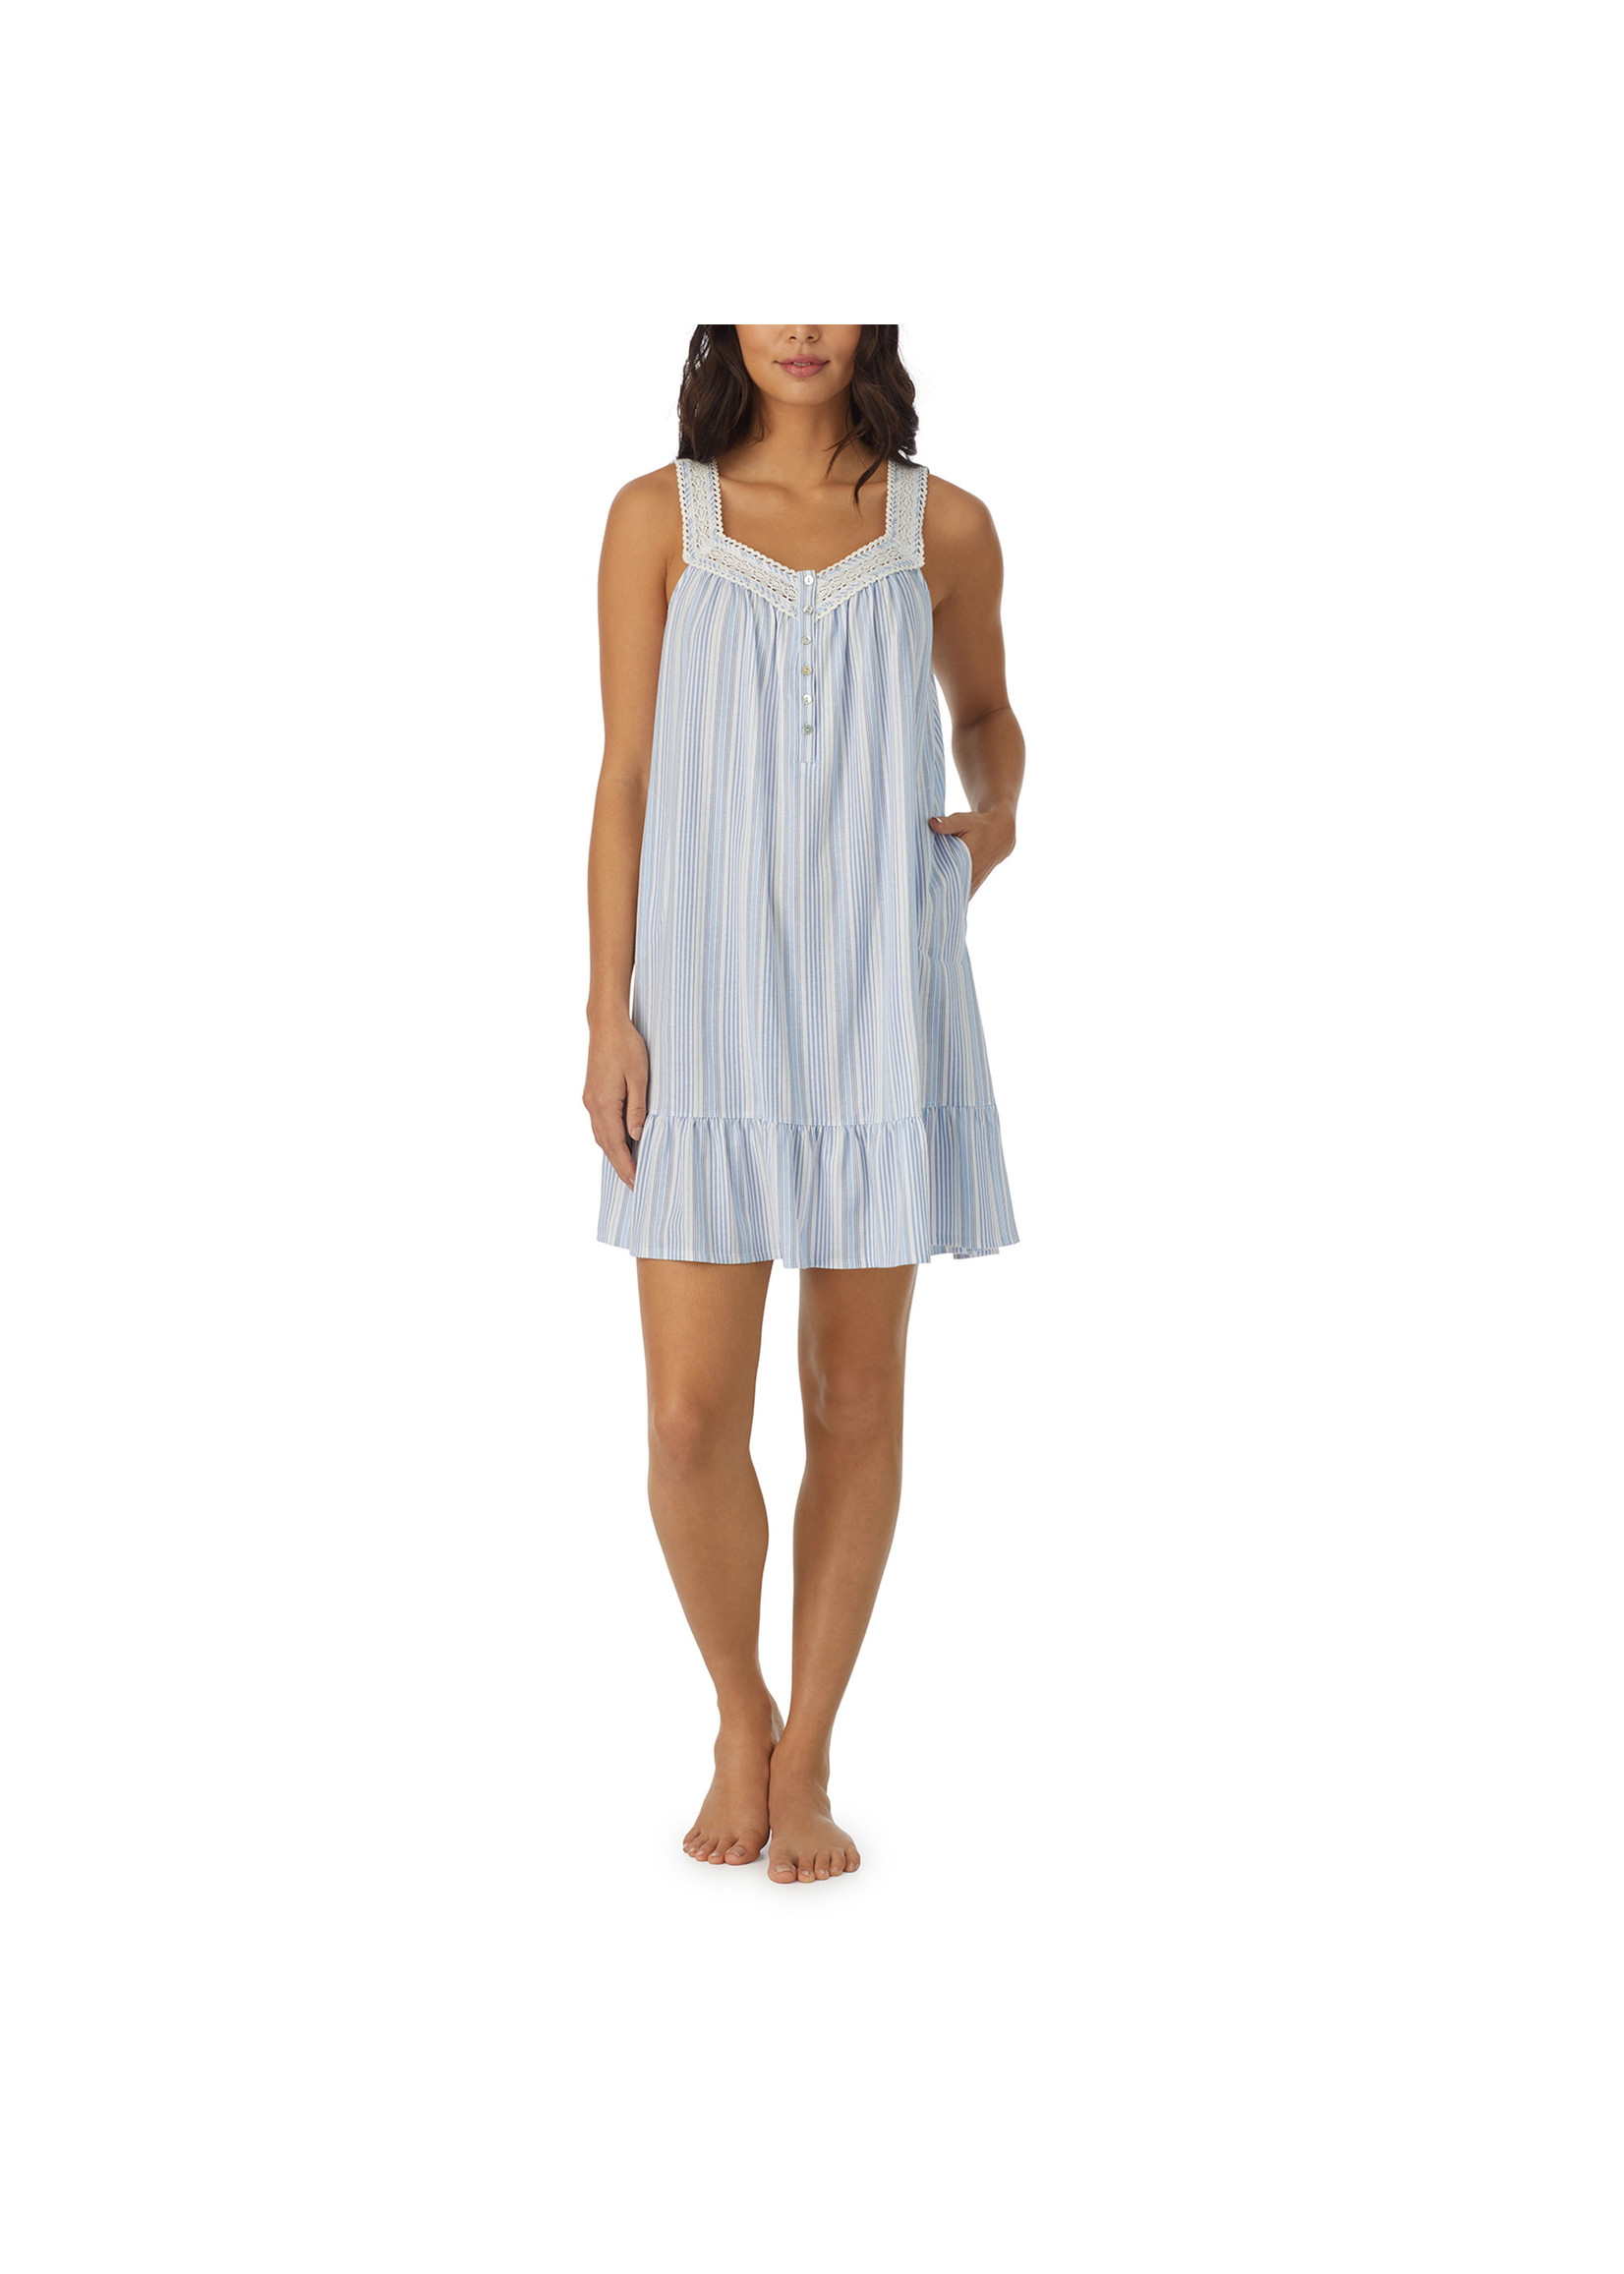 Aria Nautical Stripes Sleeveless Nightgown